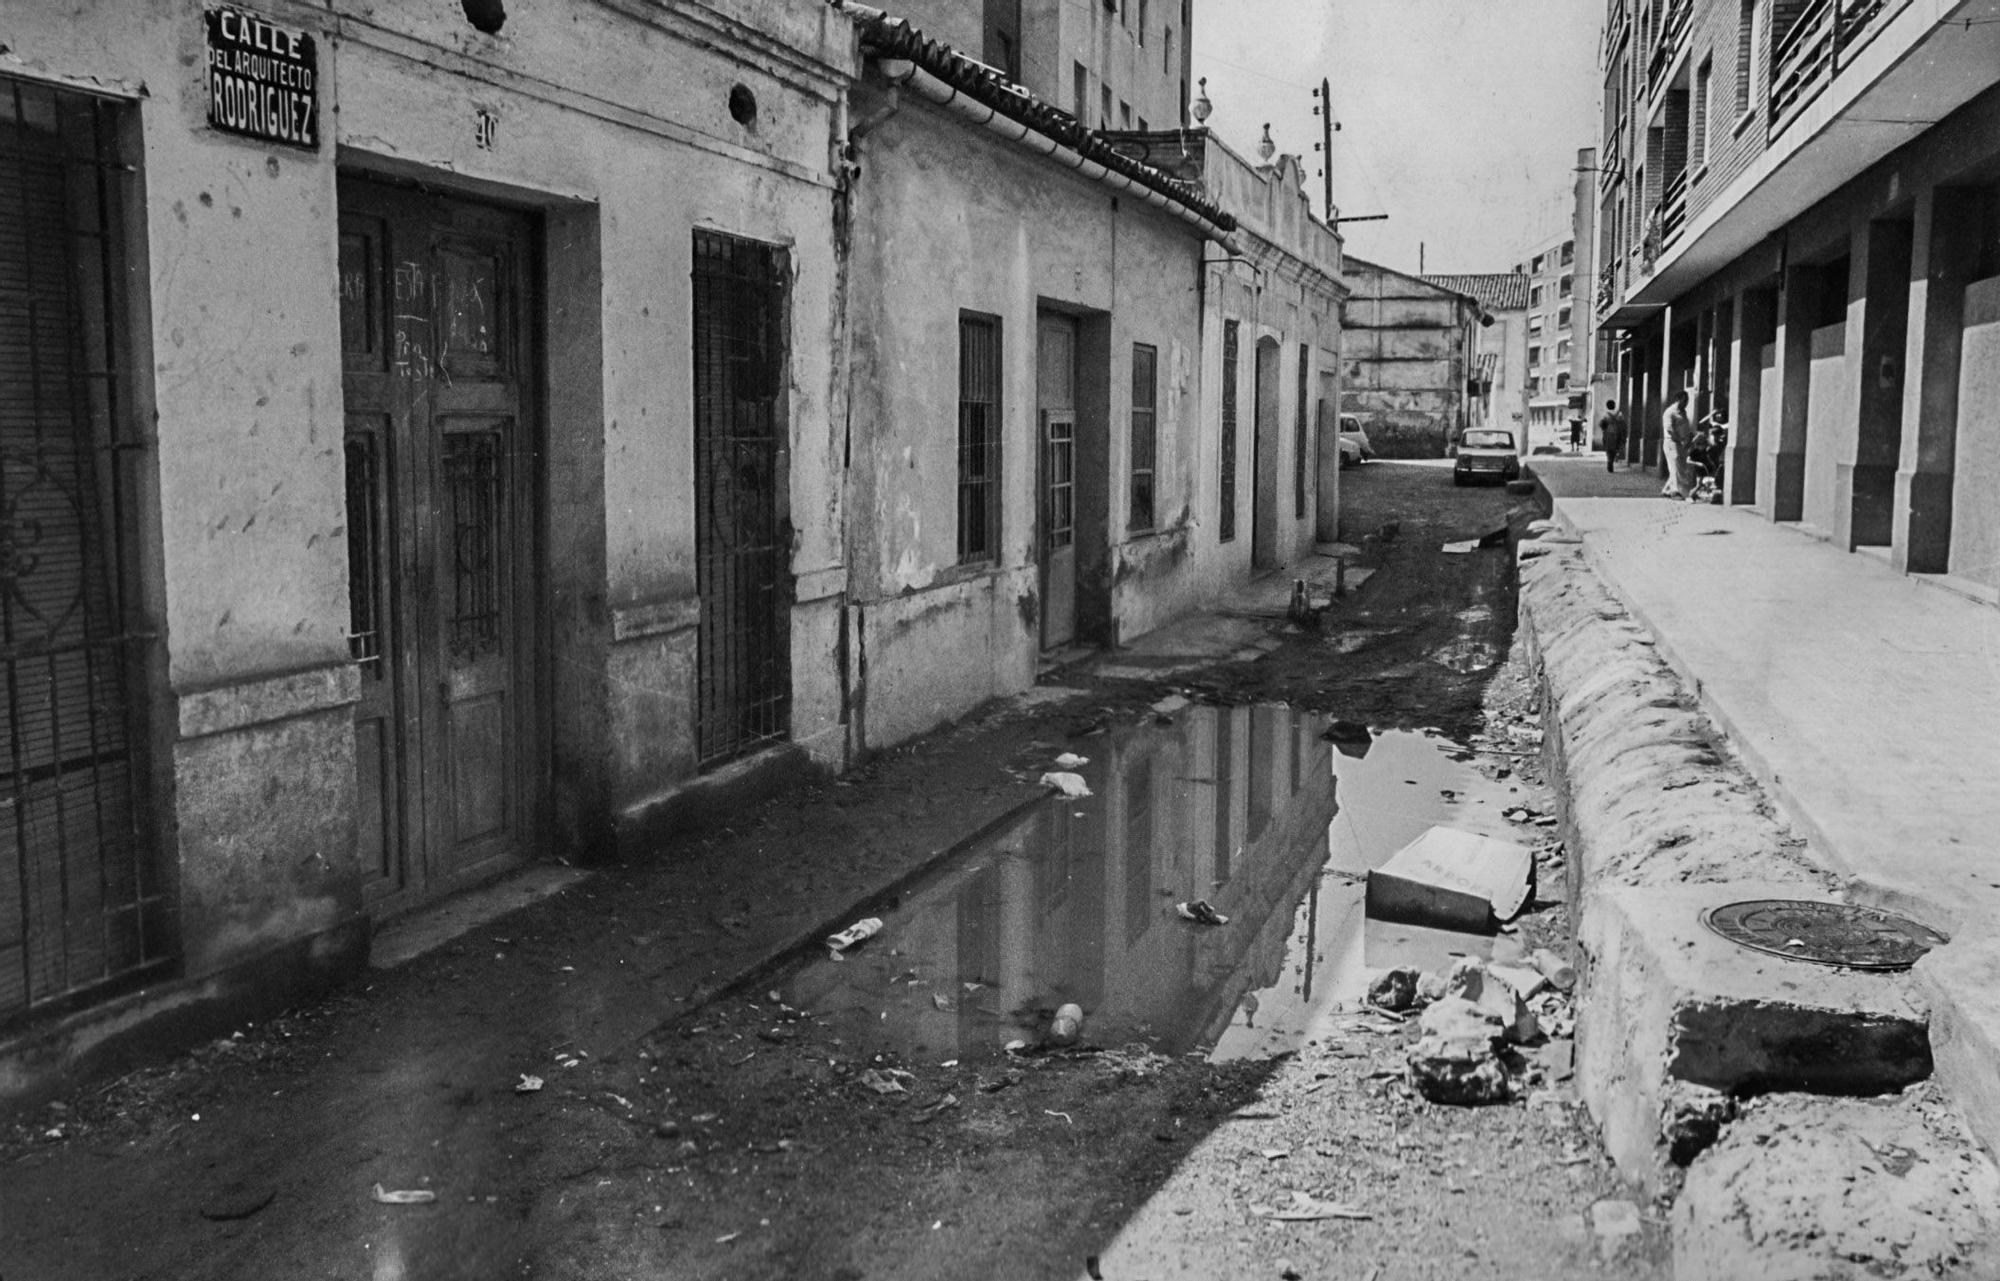 La València desaparecida: Orriols en los 80/90